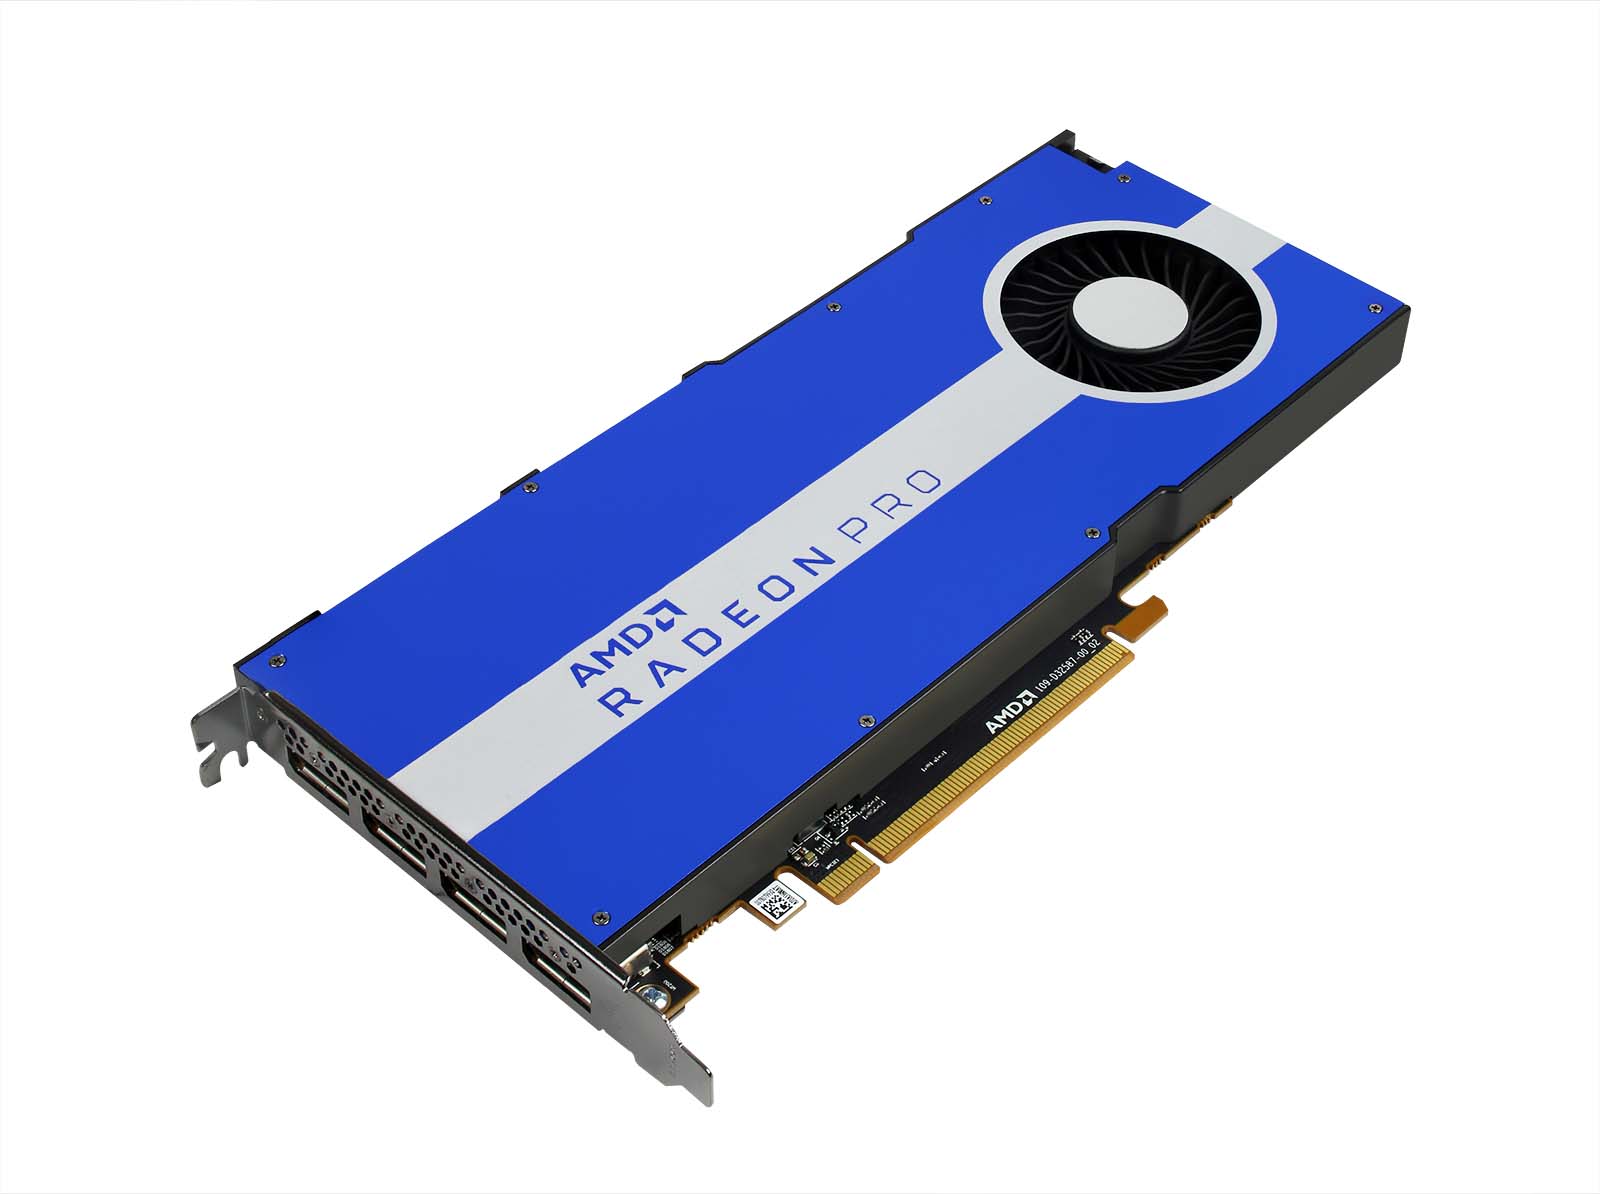 AMD Radeon Pro W5500 8GB グラフィックス カード Monitors.com